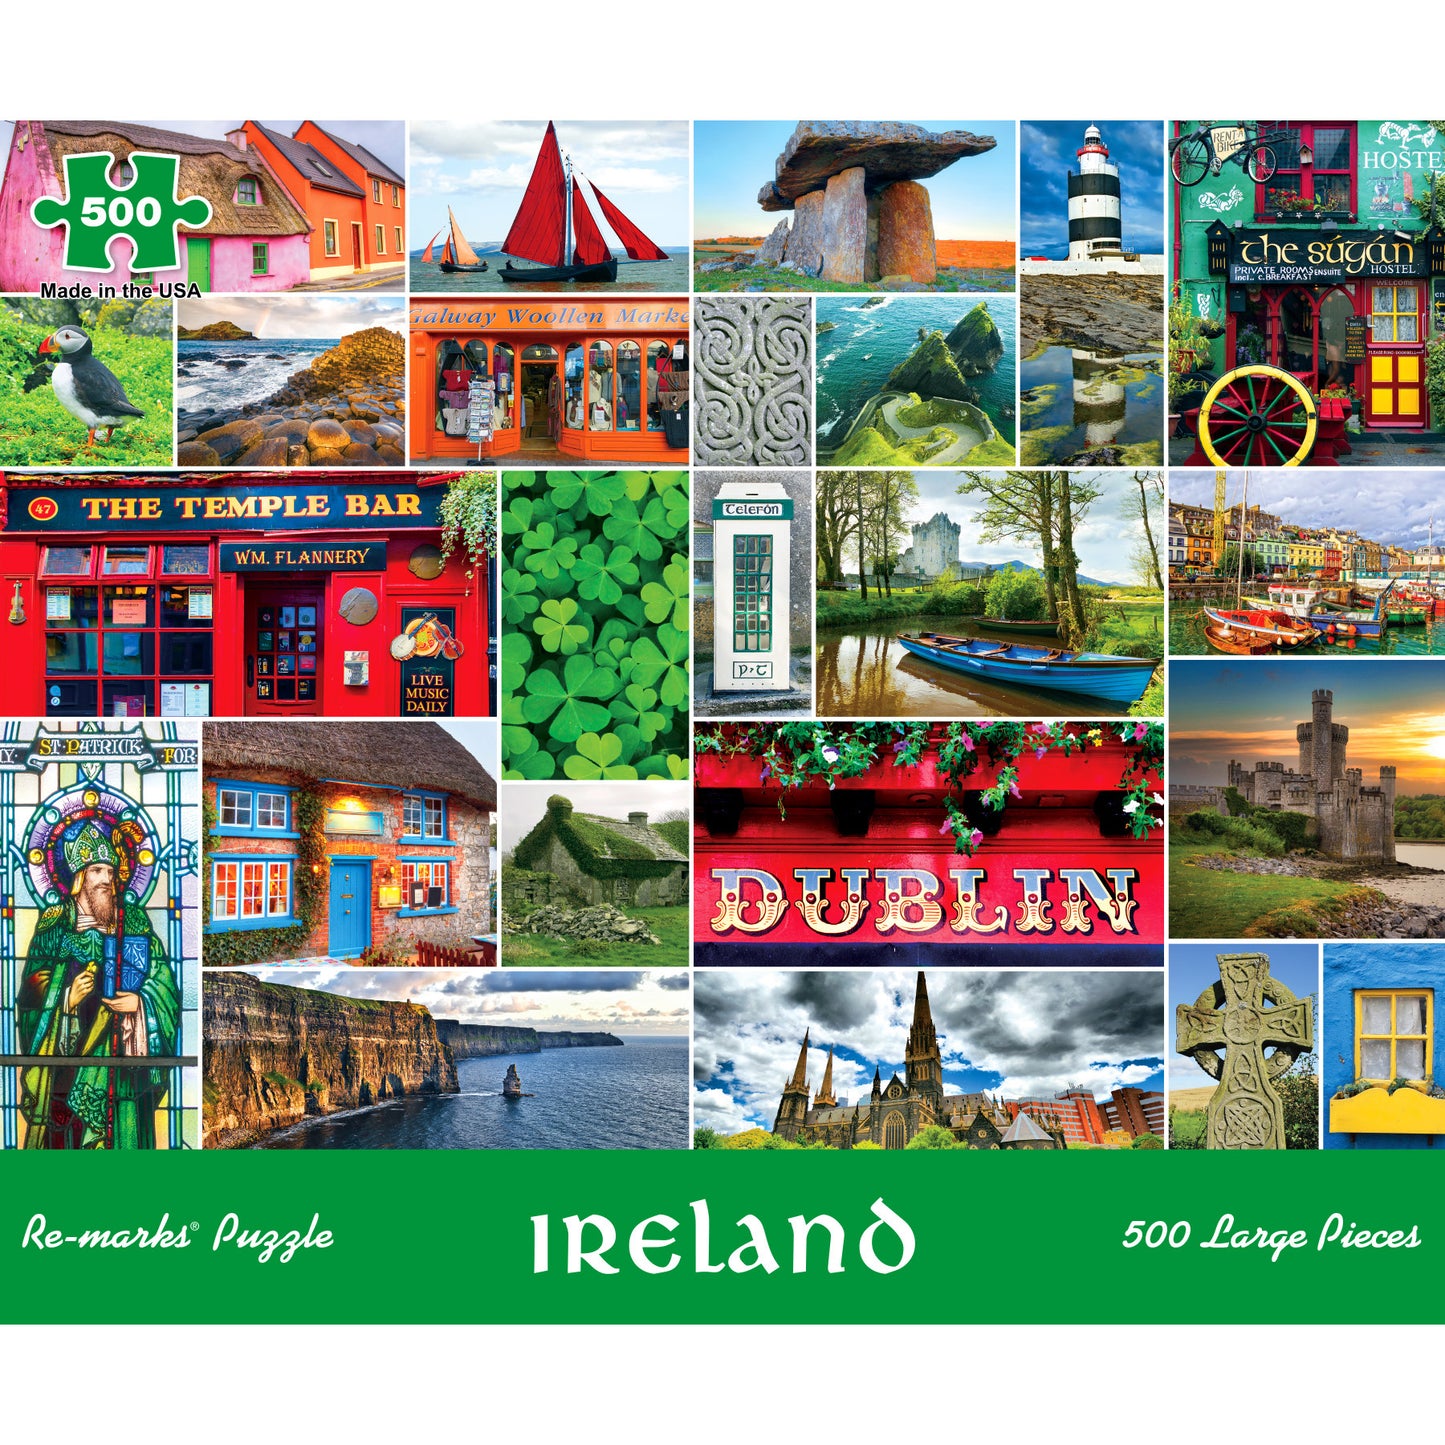 Ireland Photo Collage 500 Large Piece Jigsaw Puzzle